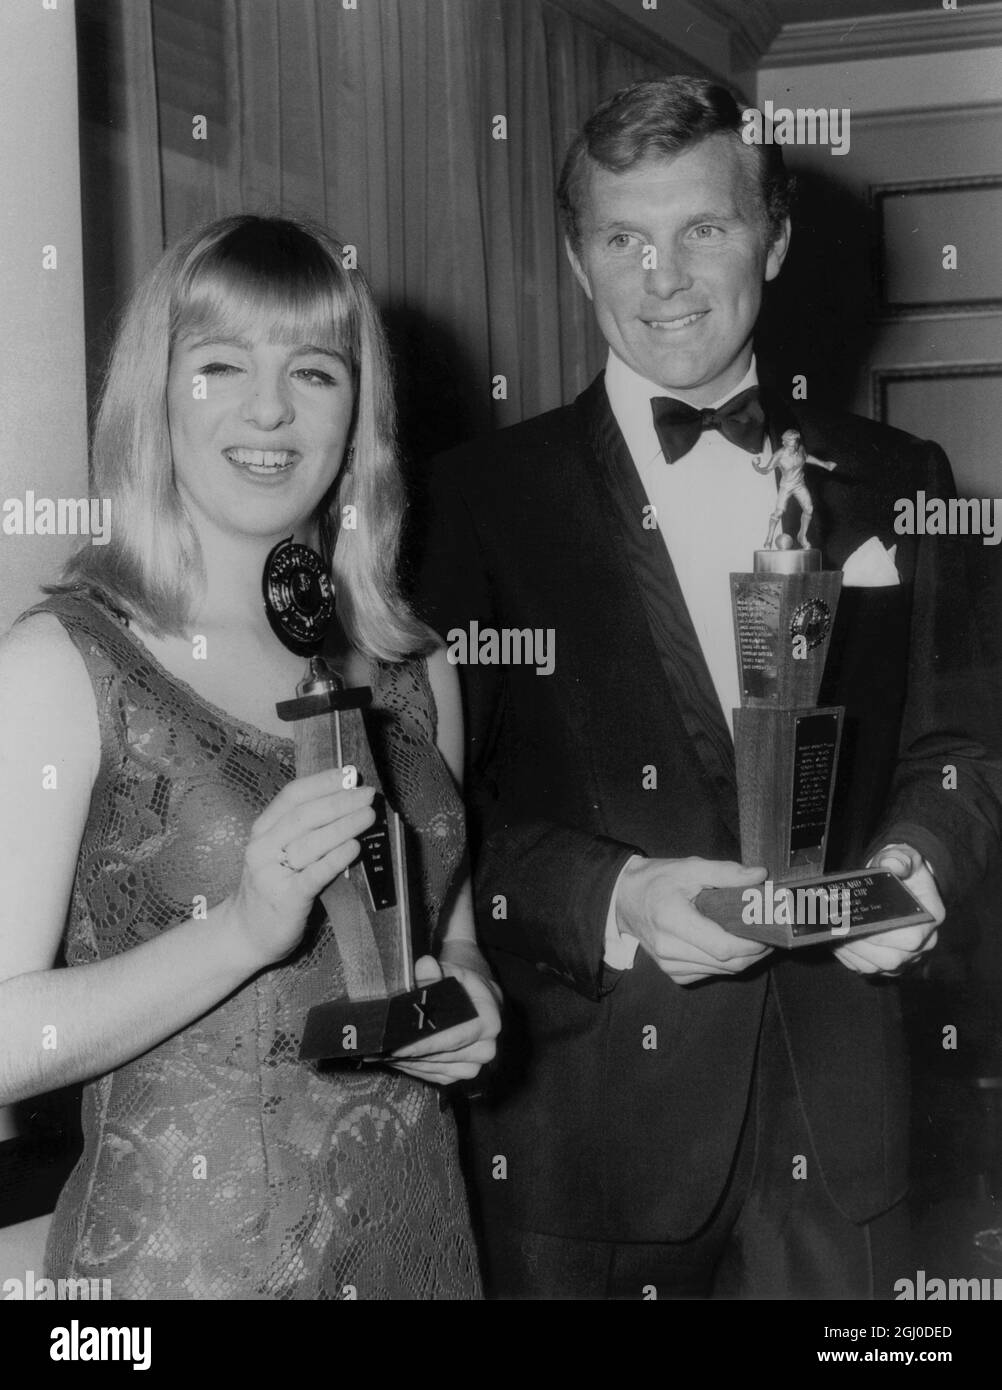 Bobby Moore, Kapitän von West Ham United (Topsportler des Jahres) und Sportlerin des Jahres Linda Ludgrove Swimming's Commonwealth Games, dreifacher Goldmedaillengewinnerin, holt sich ihre Auszeichnungen. Dezember 1966 Stockfoto